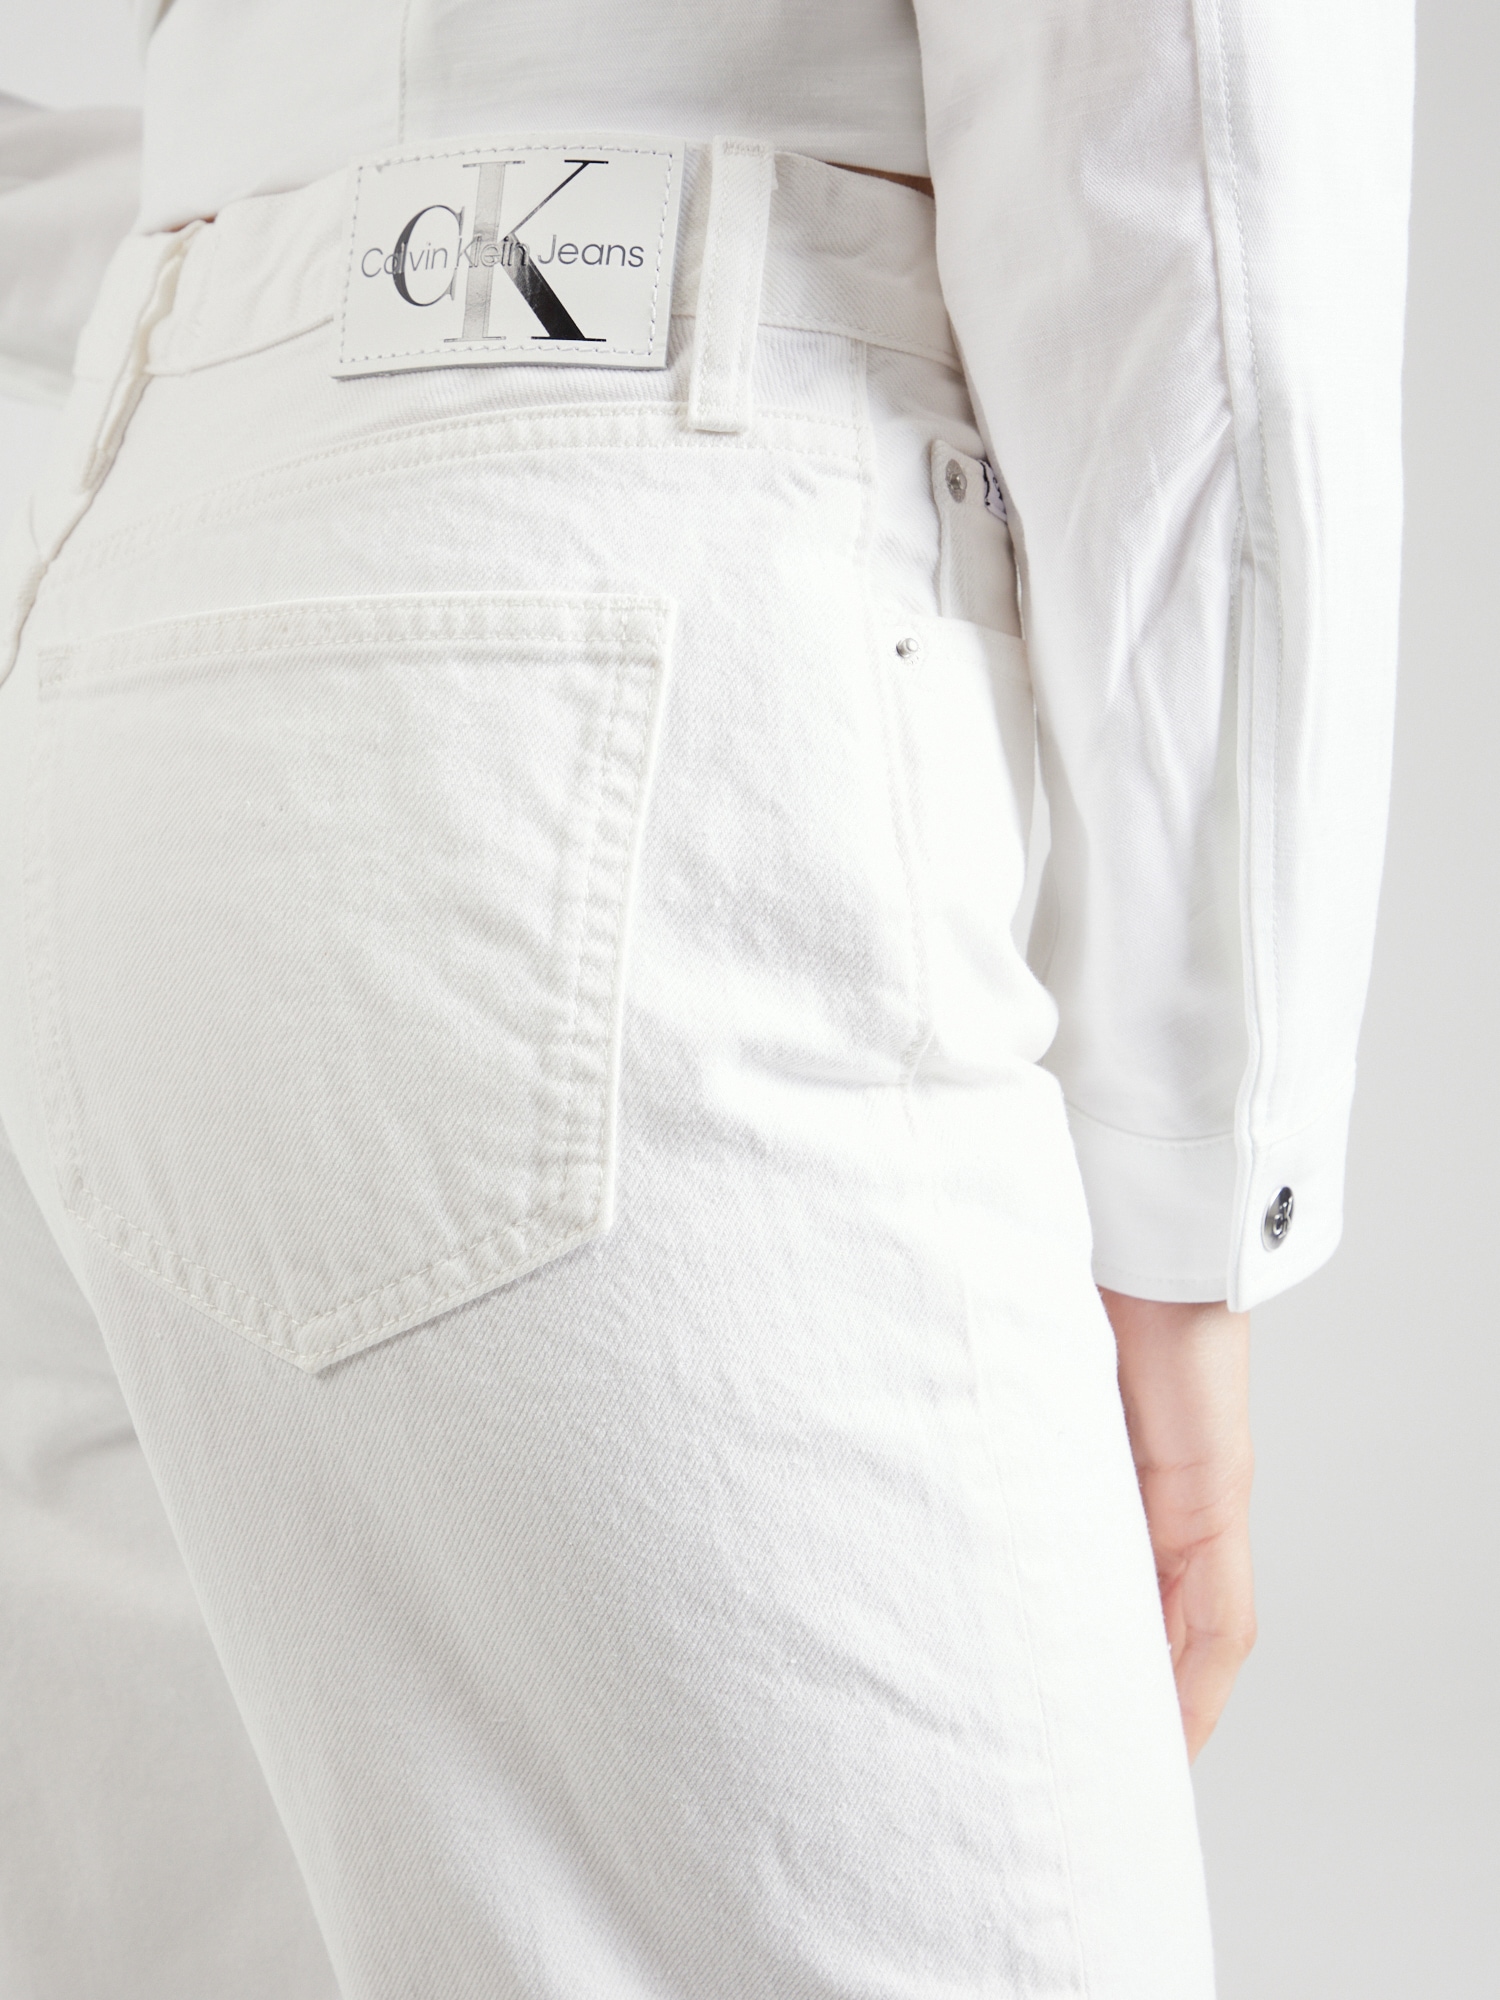 Jeans 'AUTHENTIC SLIM STRAIGHT' von Calvin Klein Jeans